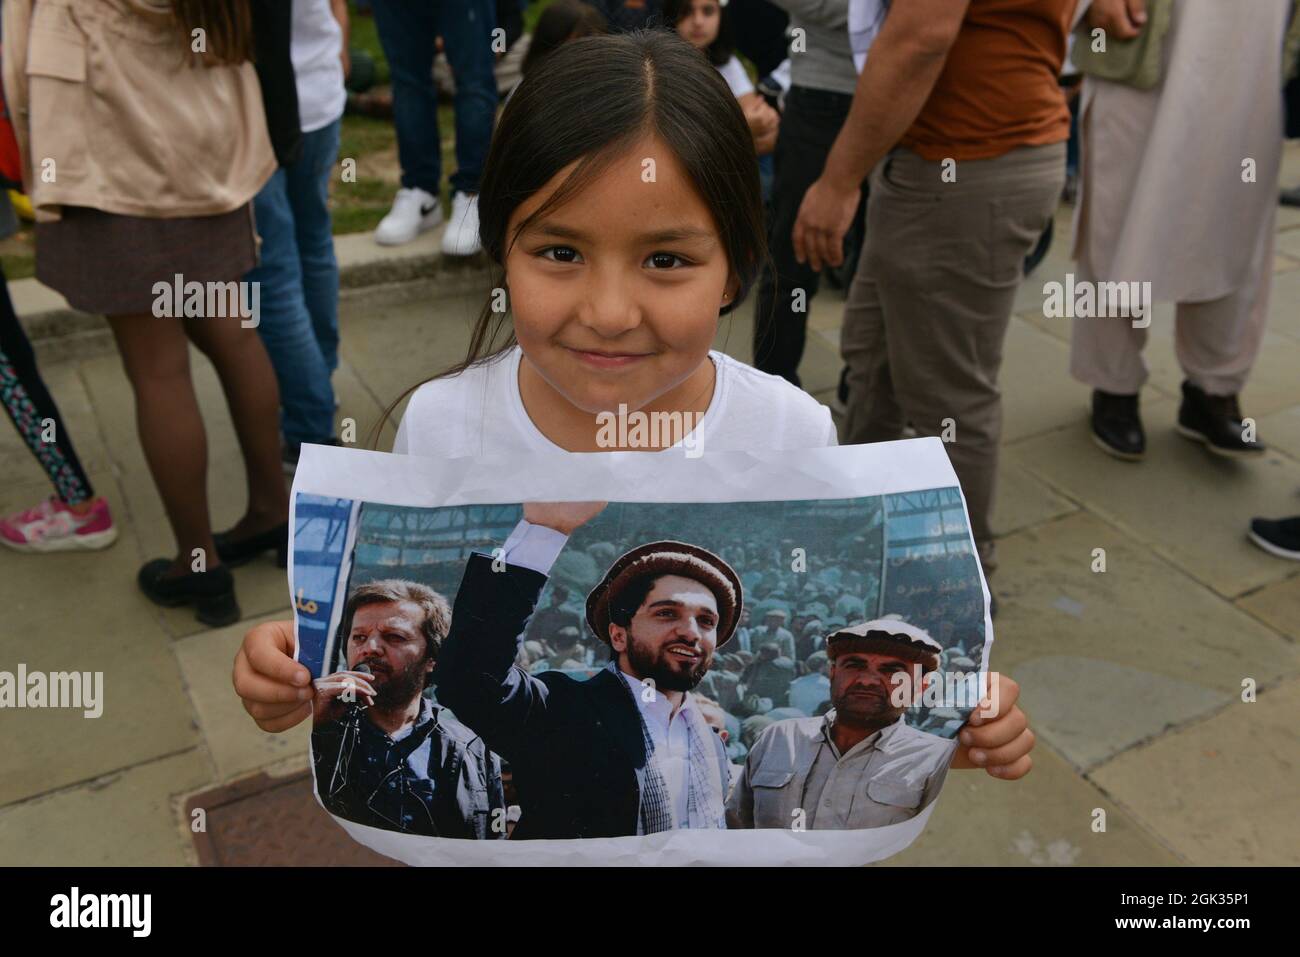 Un bambino con ritratto di Ahmad Massoud avvistato al raduno anti-talebano in Piazza del Parlamento. Gli uomini e le donne afghane hanno dimostrato il loro sostegno al leader delle forze di resistenza del Panjshir. Foto Stock